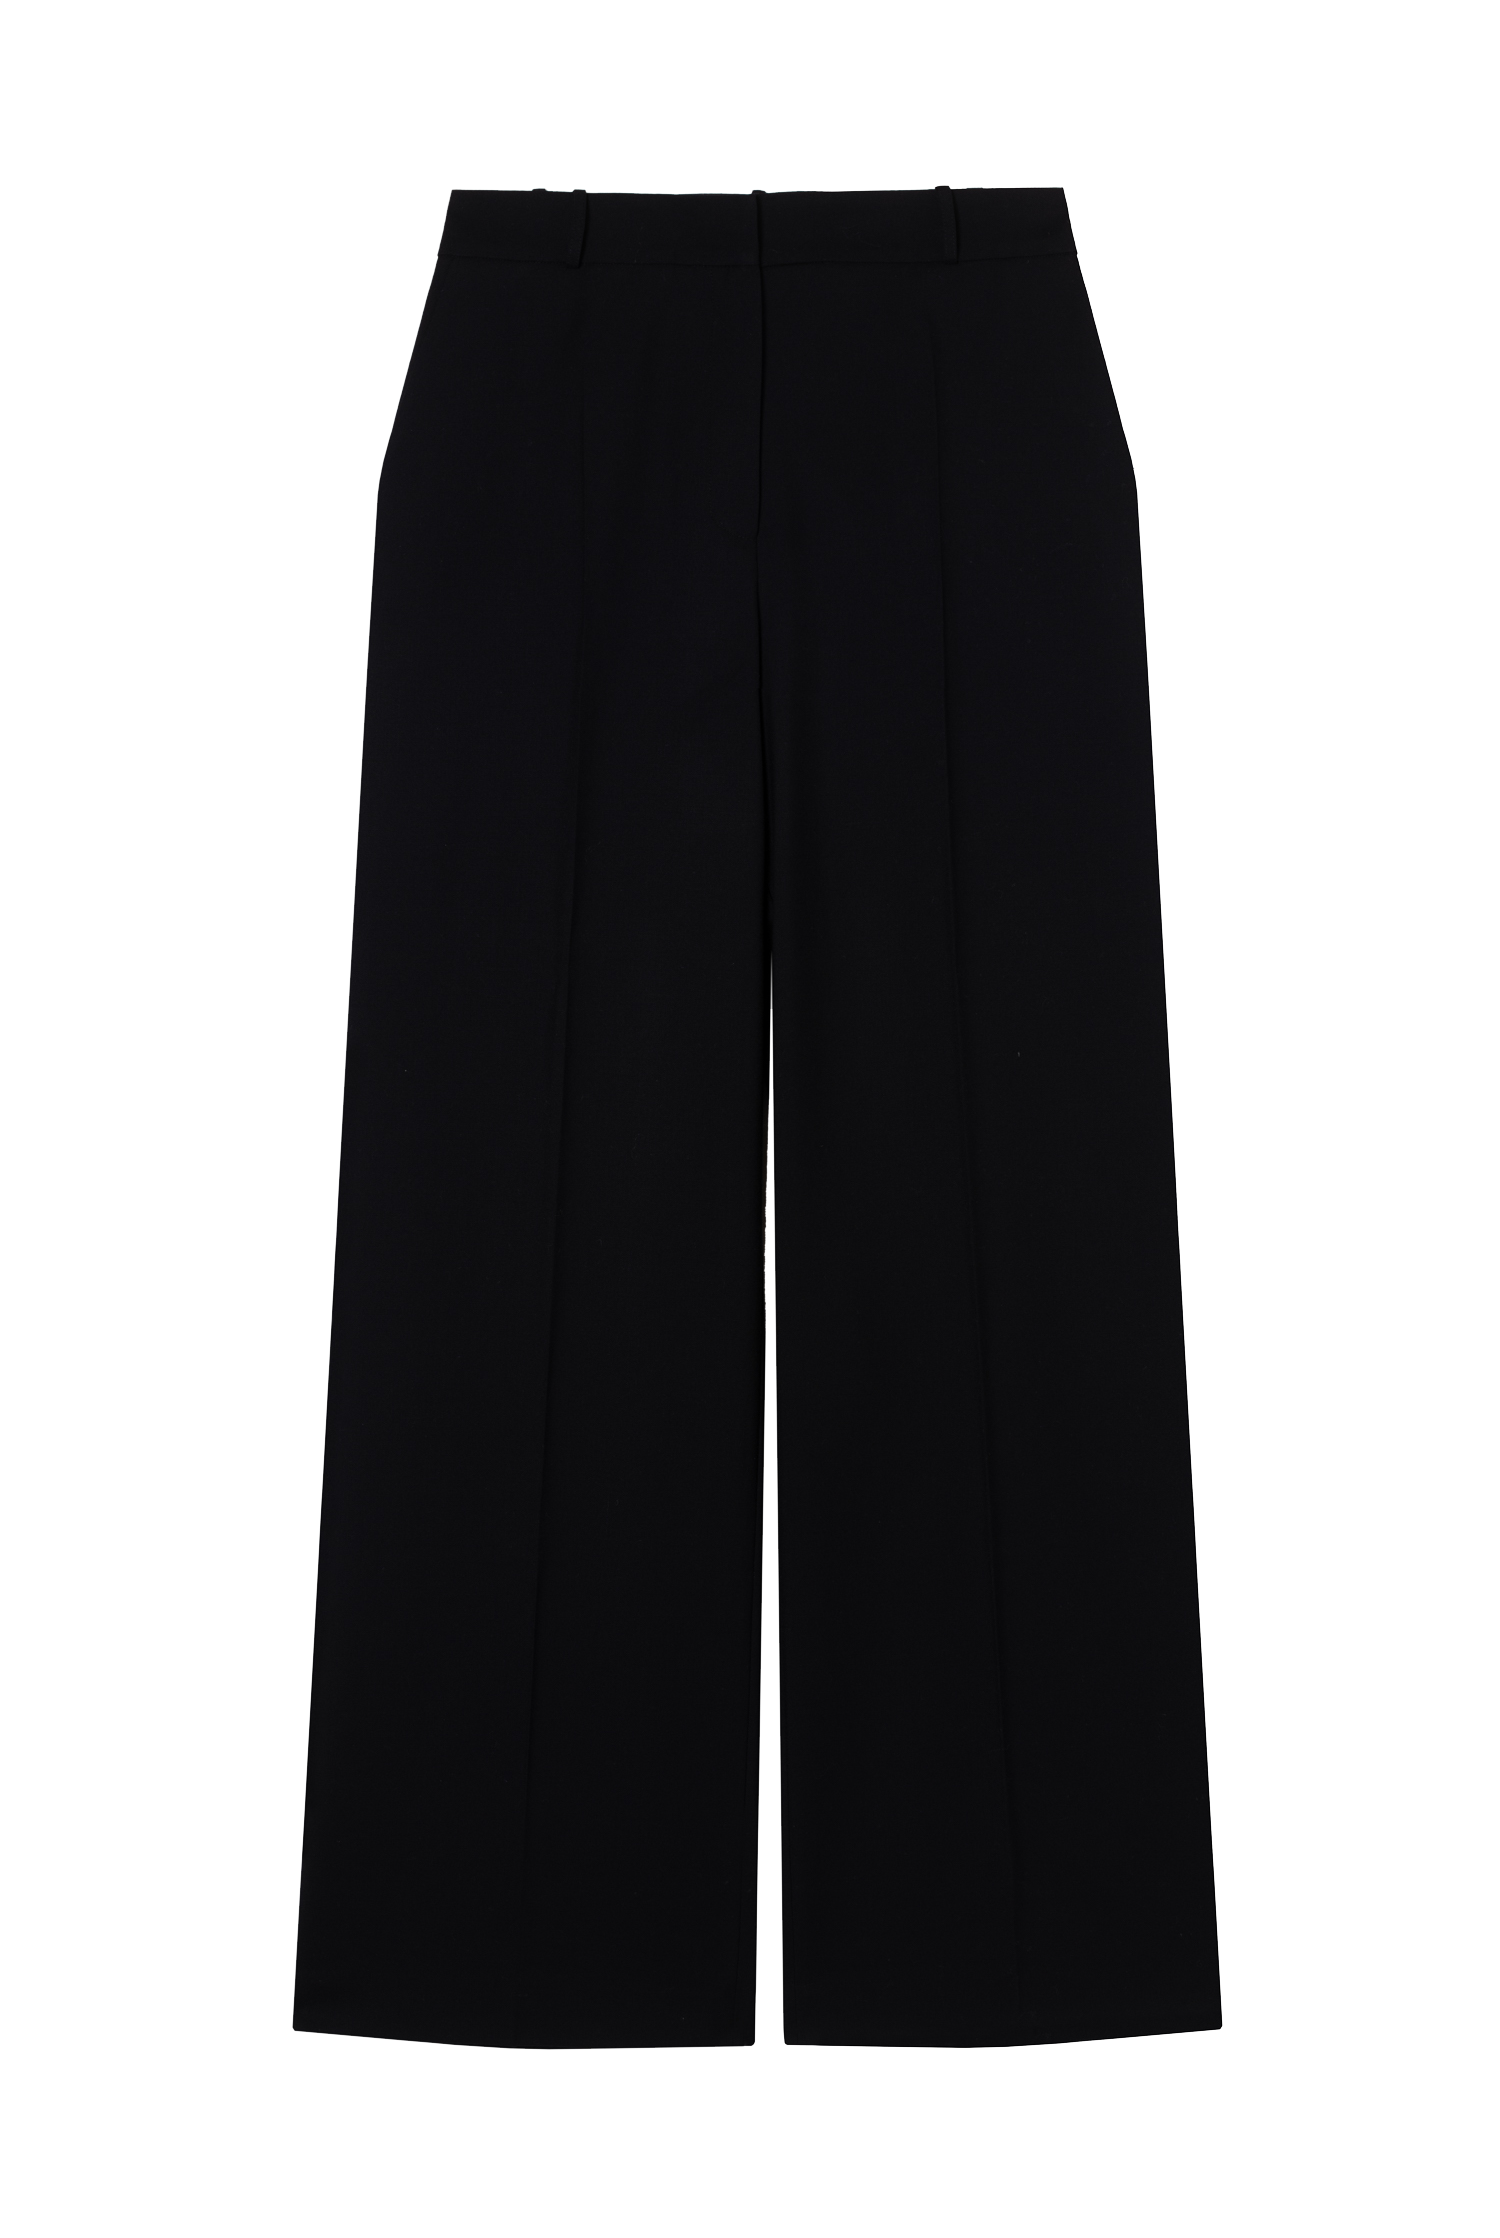 pantalon de tailleur femme twill de laine noir Made in France par Facettes Studio